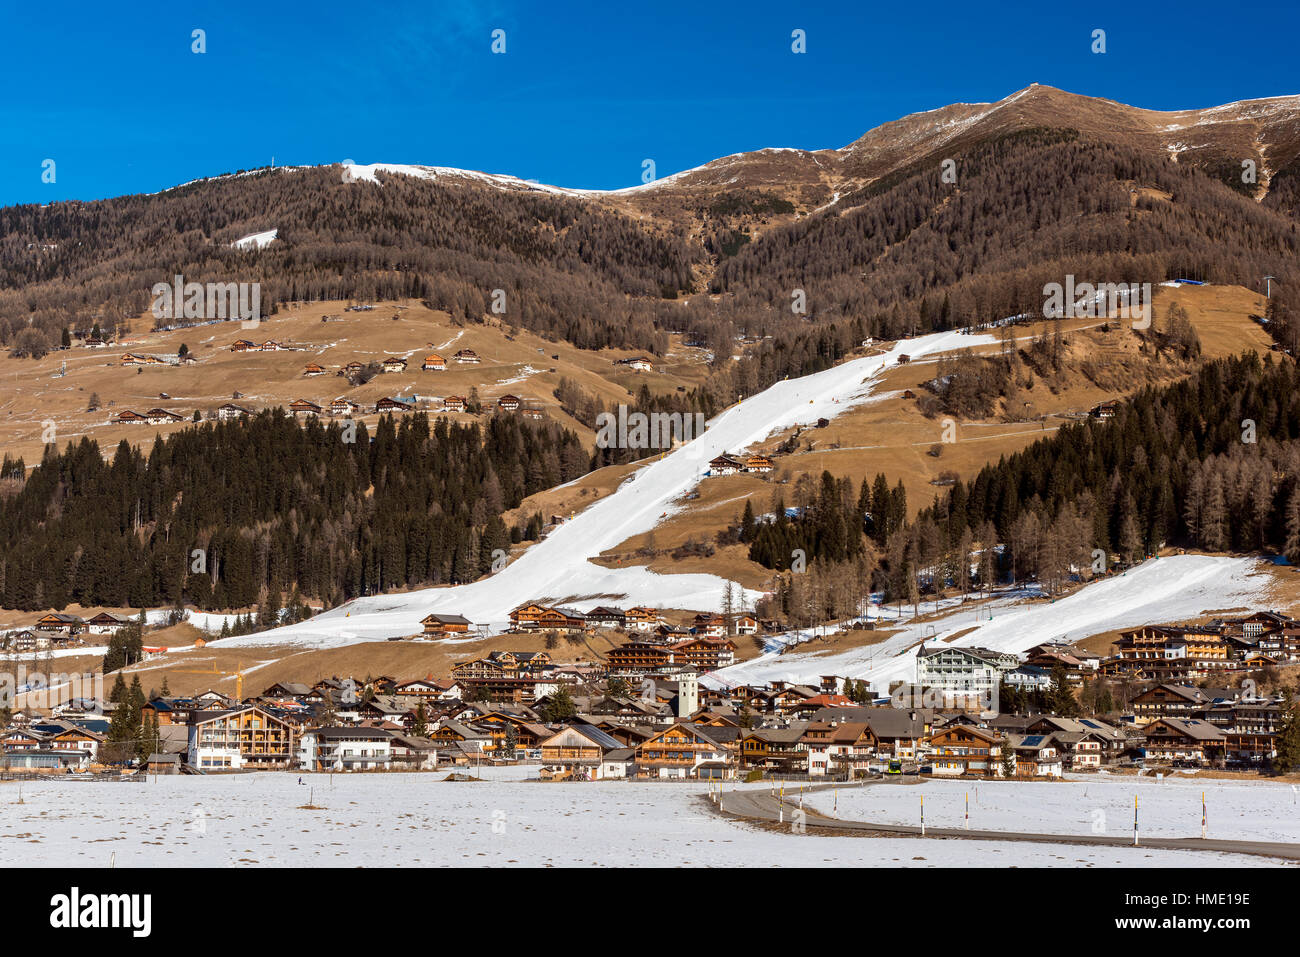 Pente de ski avec neige artificielle lors d'un hiver sec dans les Alpes, Sesto, le Tyrol du Sud, Italie Banque D'Images